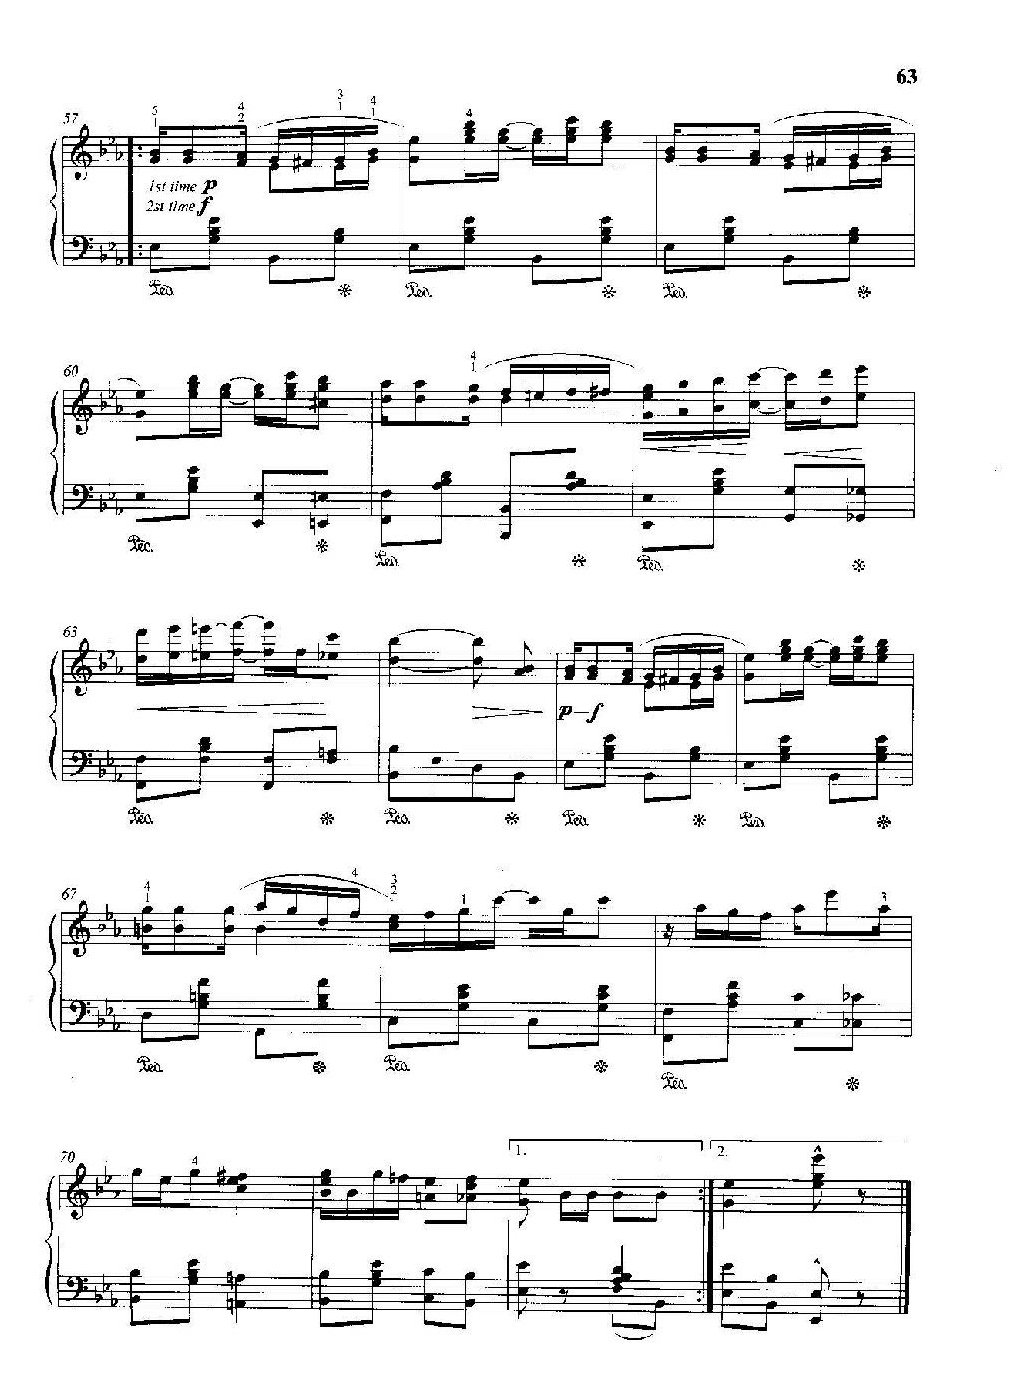 雷格泰姆钢琴乐谱《小瀑布》雷格泰姆之王斯科特·乔普林